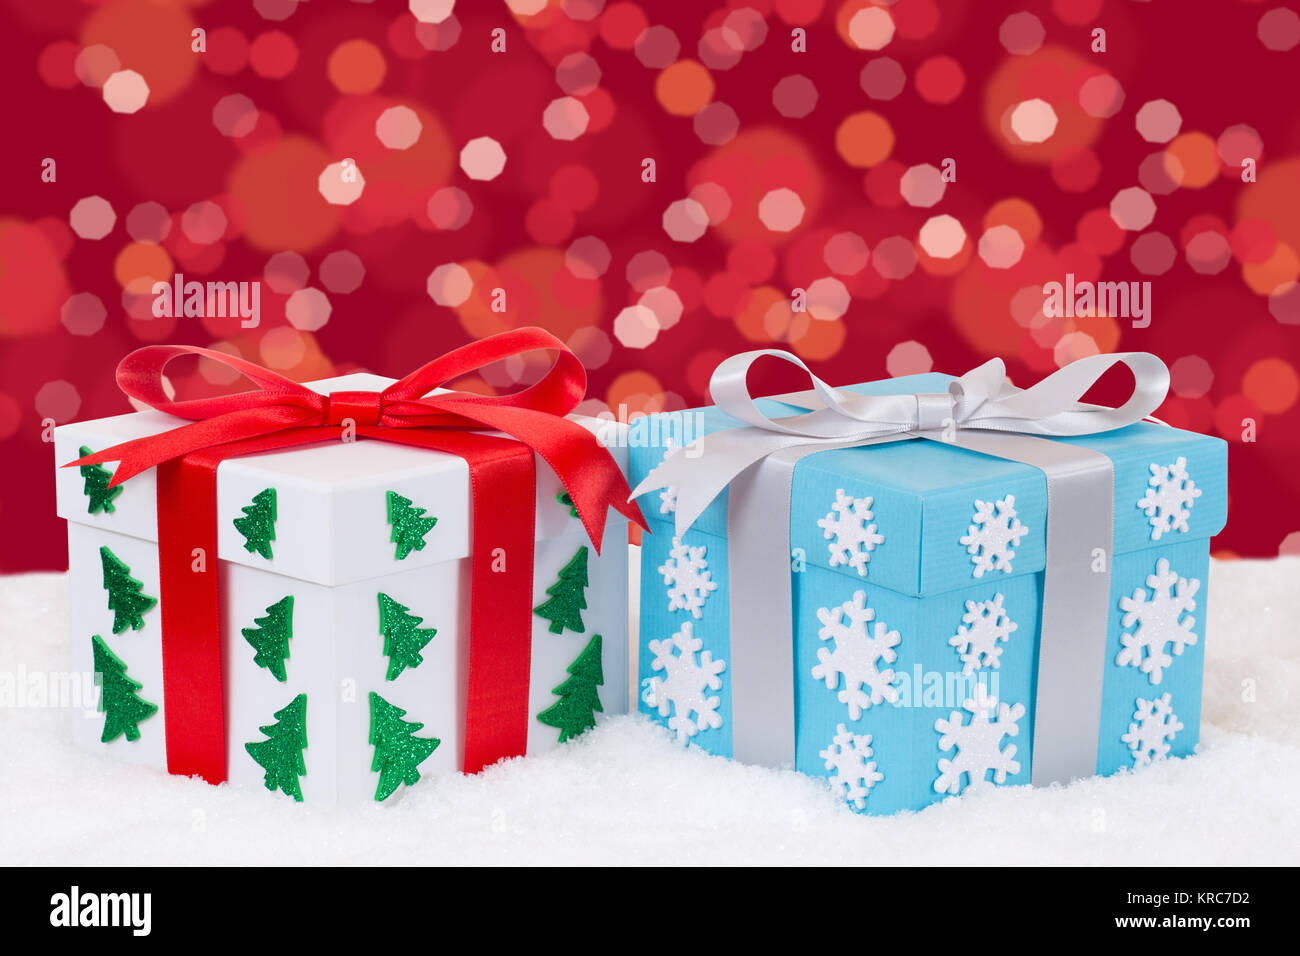 Weihnachtsgeschenke Geschenke schenken an Weihnachten Bescherung mit Textfreiraum Schnee mit Textfreiraum für Ihren eigenen Text Stock Photo